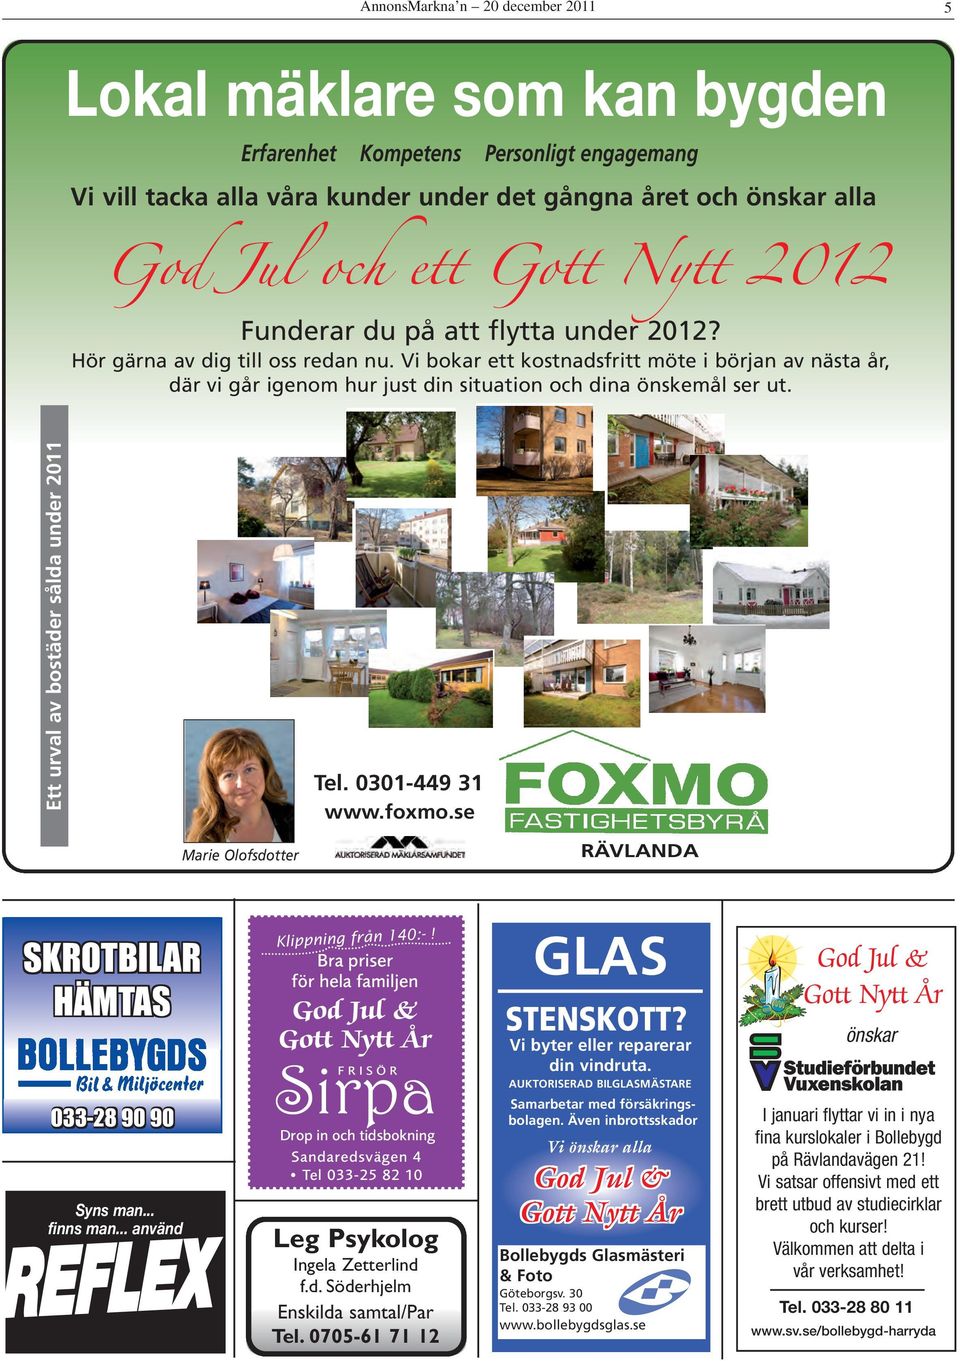 Ett urval av bostäder sålda under 2011 Tel. 0301-449 31 www.foxmo.se Marie Olofsdotter RÄVLANDA SKROTBILAR HÄMTAS 033-28 90 90 Syns man... finns man... använd REFLEX Klippning från 140:-!